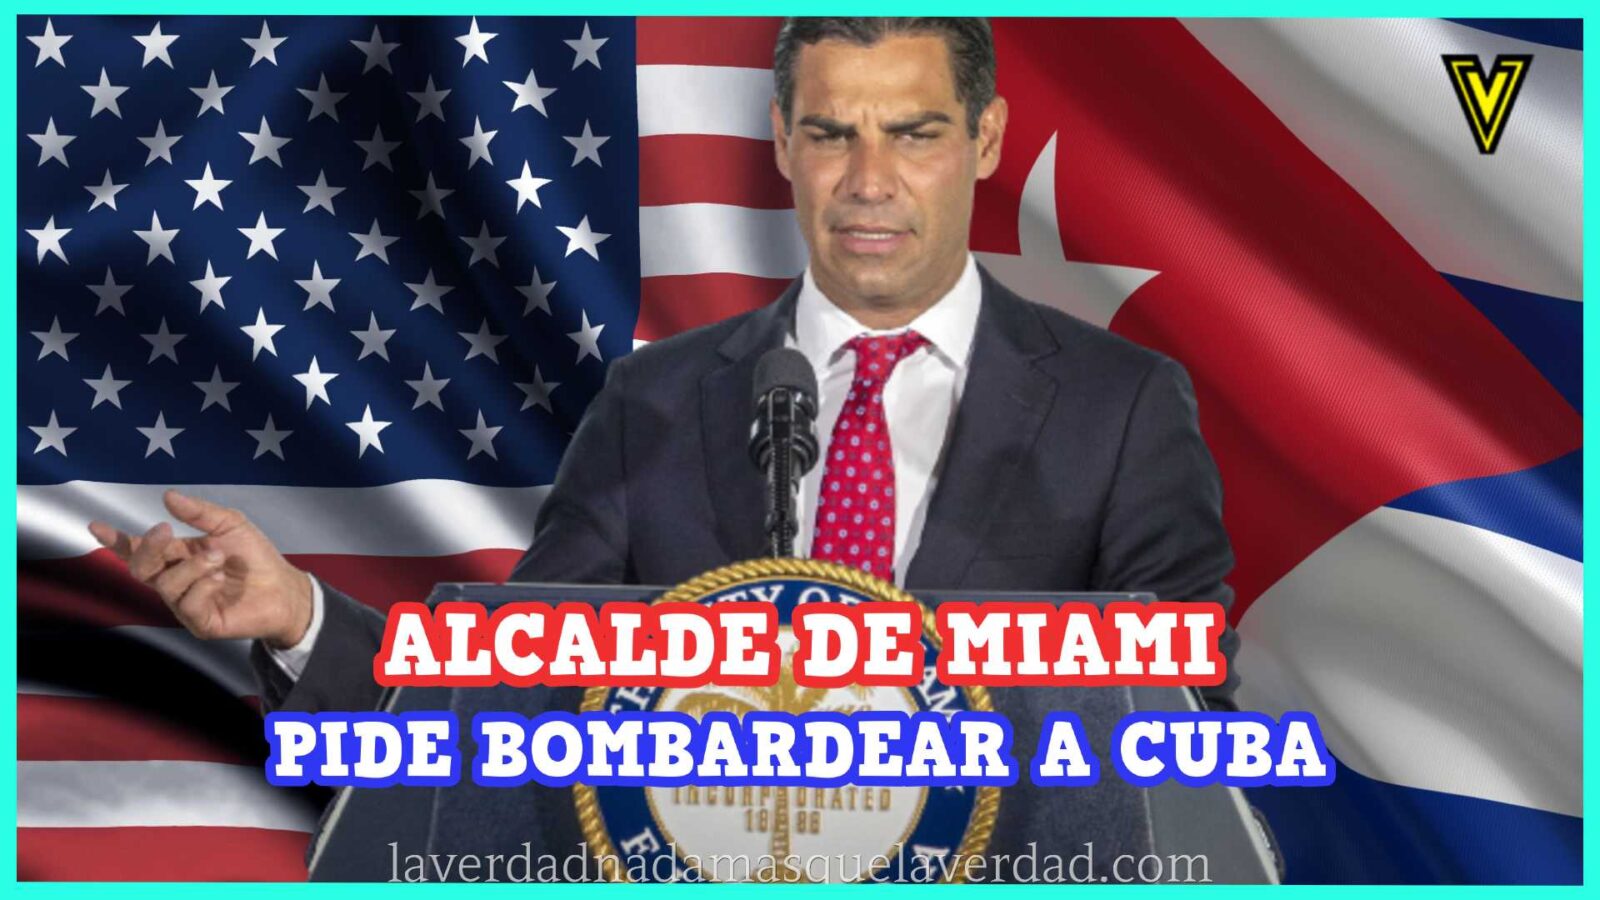 Alcalde de Miami propone bombardeo a Cuba